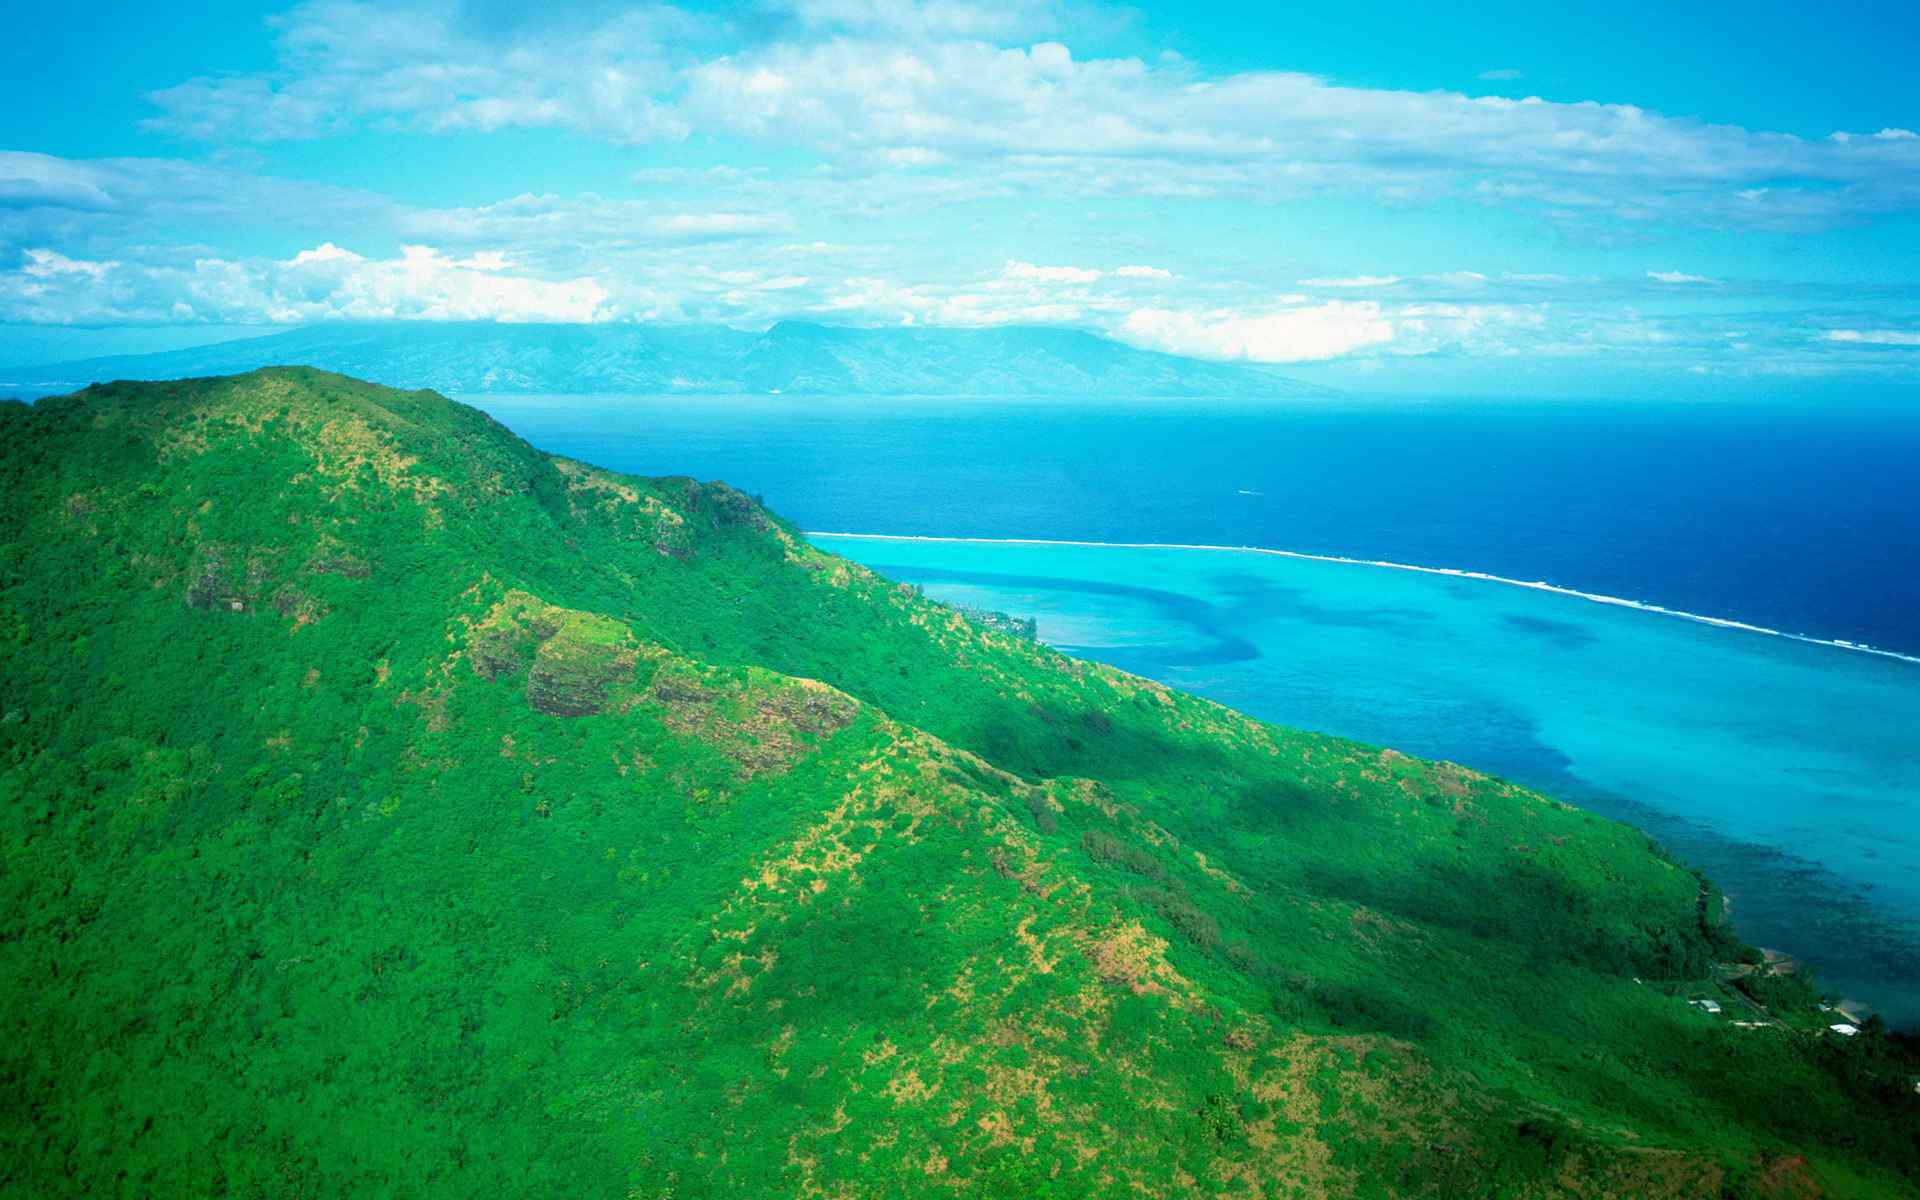 塔希提岛高清海岛风景桌面壁纸 第一辑